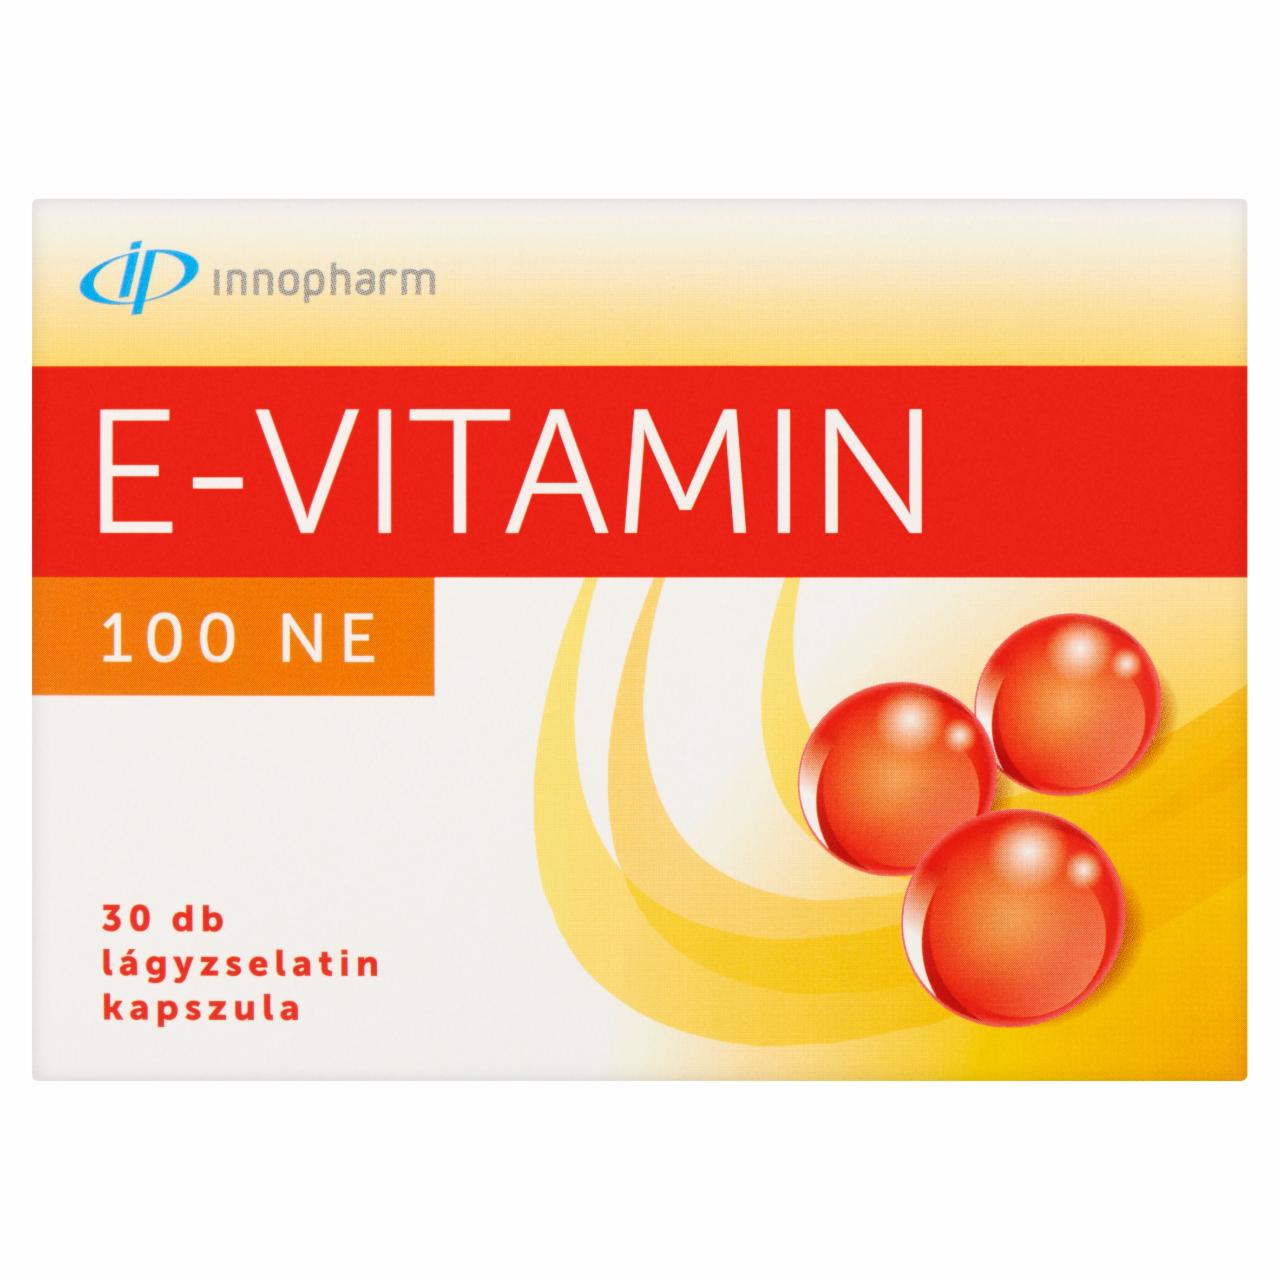 Képek - Innopharm E-vitamin 100 NE étrend-kiegészítő lágyzselatin kapszula 30 db 21 g